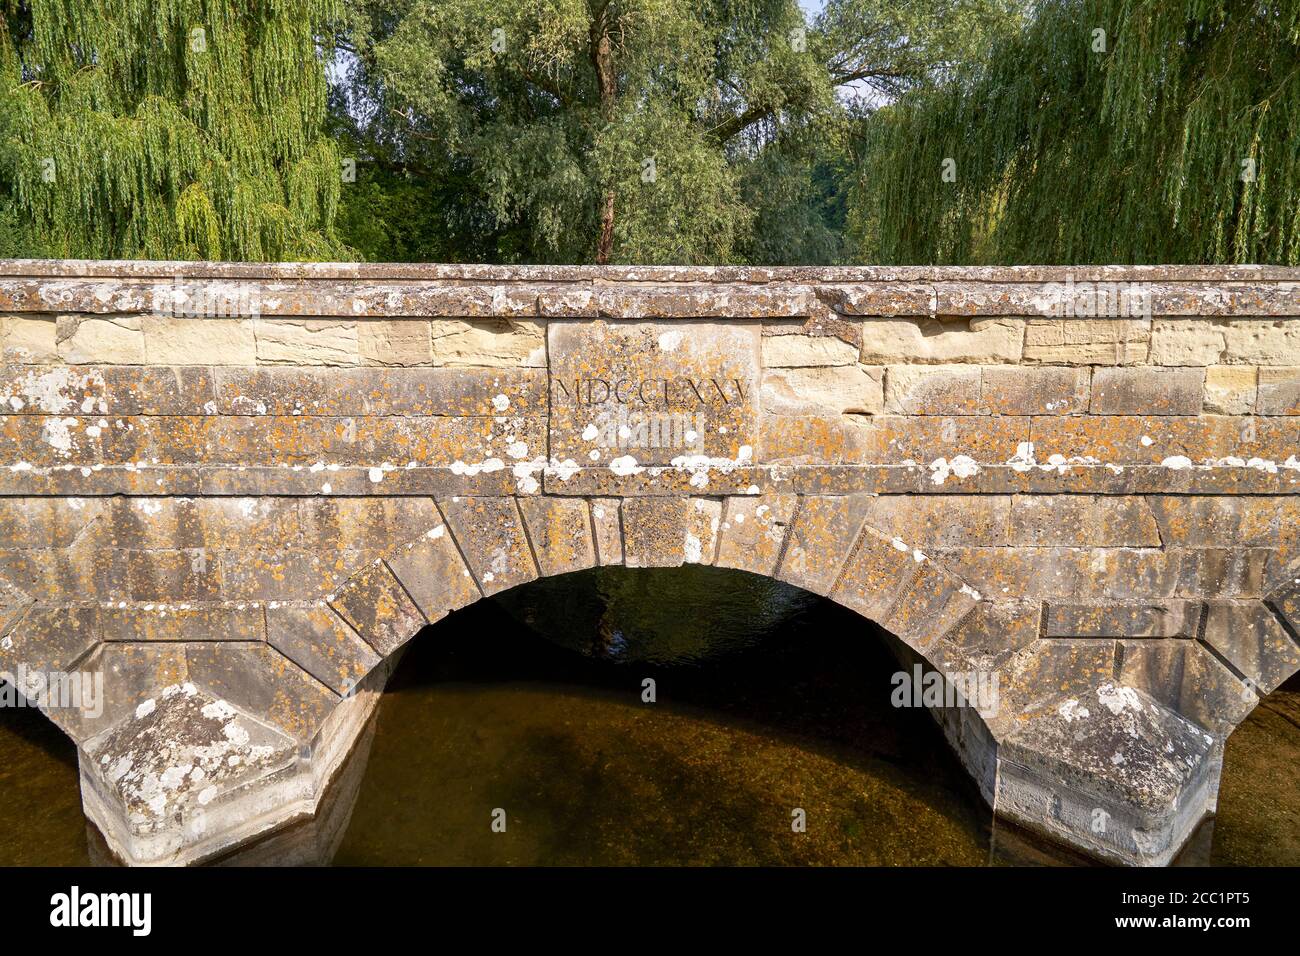 Old stone bridge over the River Avon with Roman script Stock Photo